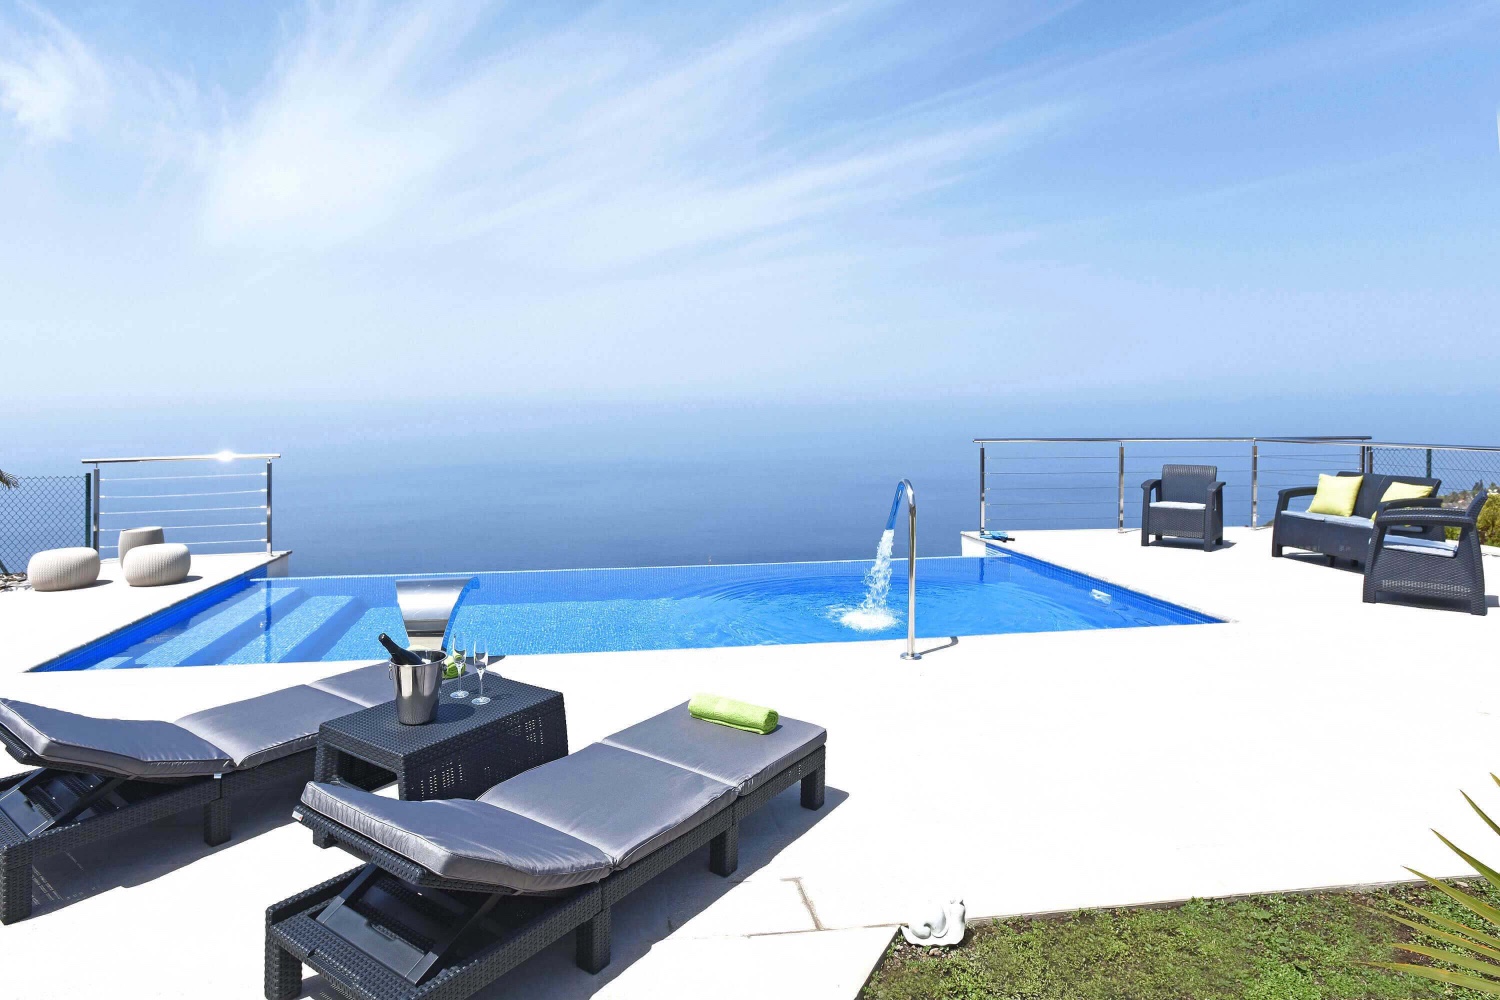 Neu in modernem Stil renoviertes Ferienhaus in der schönen Gegend von Tijarafe mit großer Terrasse mit Pool und Panoramablick auf das Meer